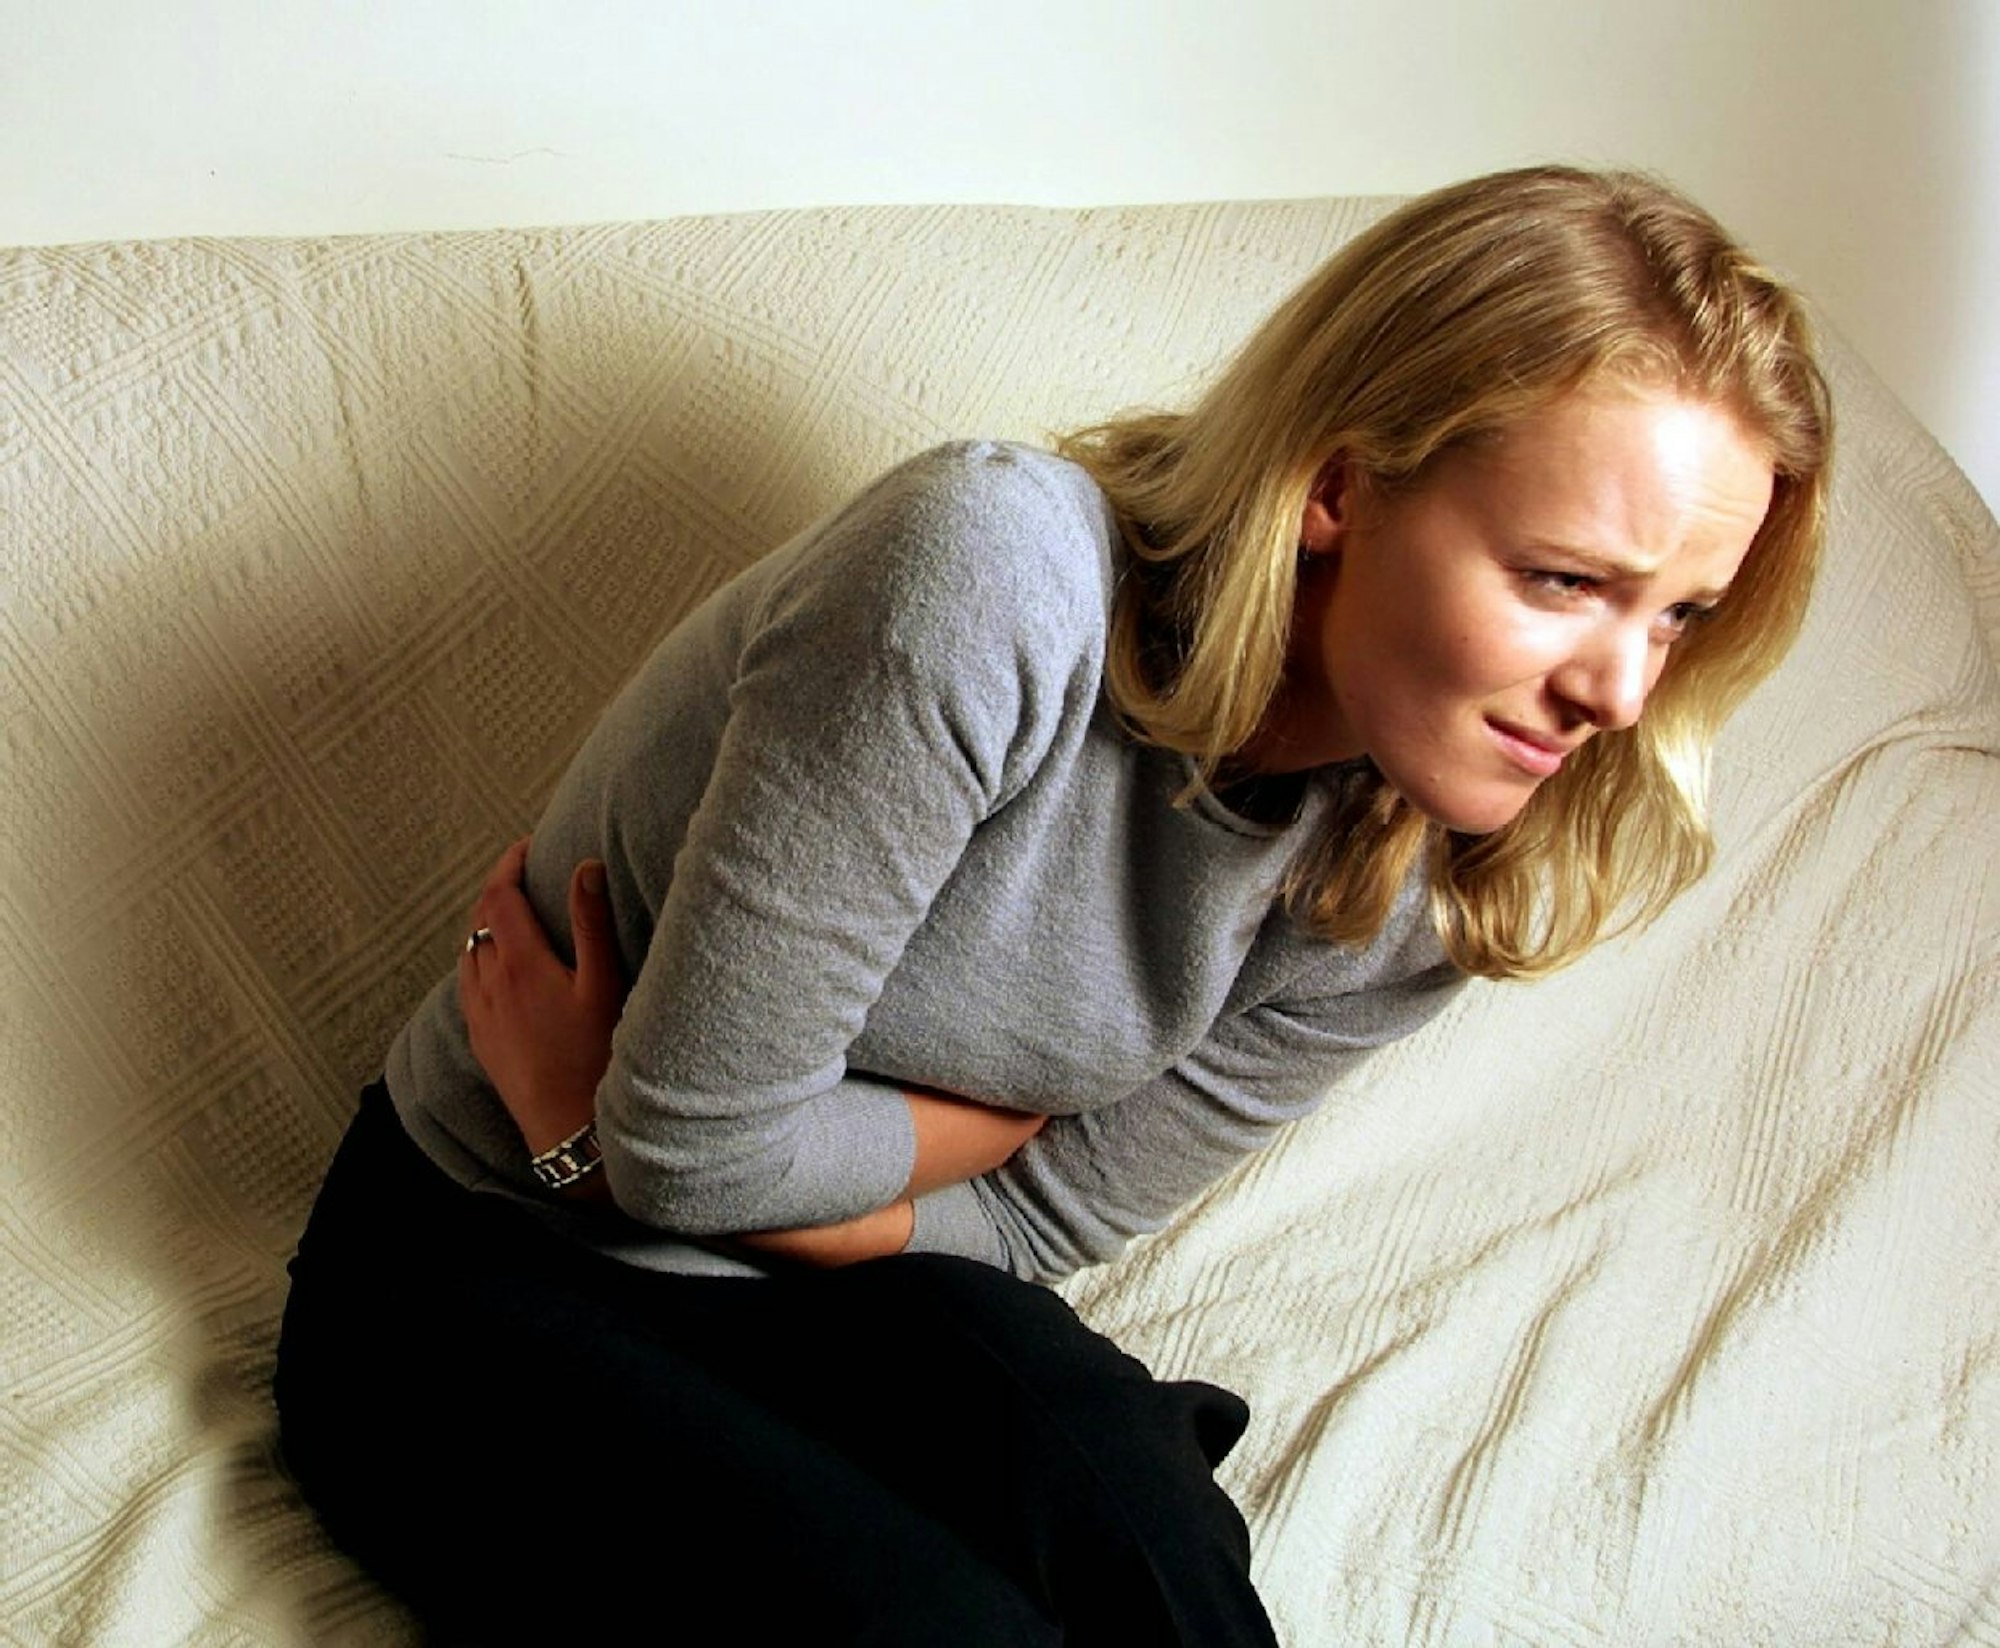 Magenschmerzen, Völlegefühl oder ein aufgeblähter Bauch können auf eine Magenschleimhautentzündung hindeuten.